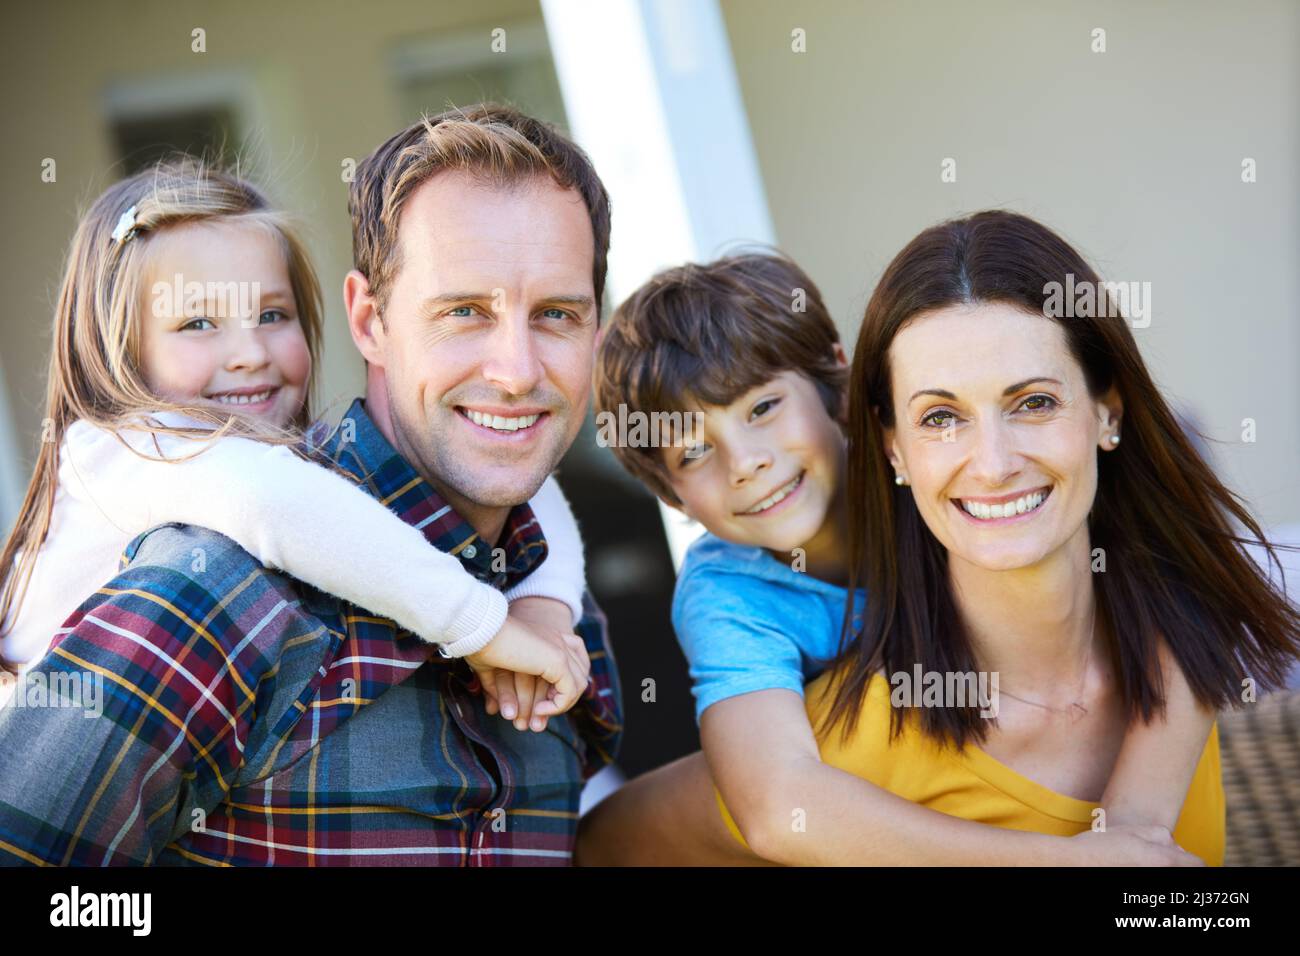 Wir haben alles, was wir brauchen. Aufnahme einer vierköpfigen Familie, die Zeit im Freien verbringt. Stockfoto